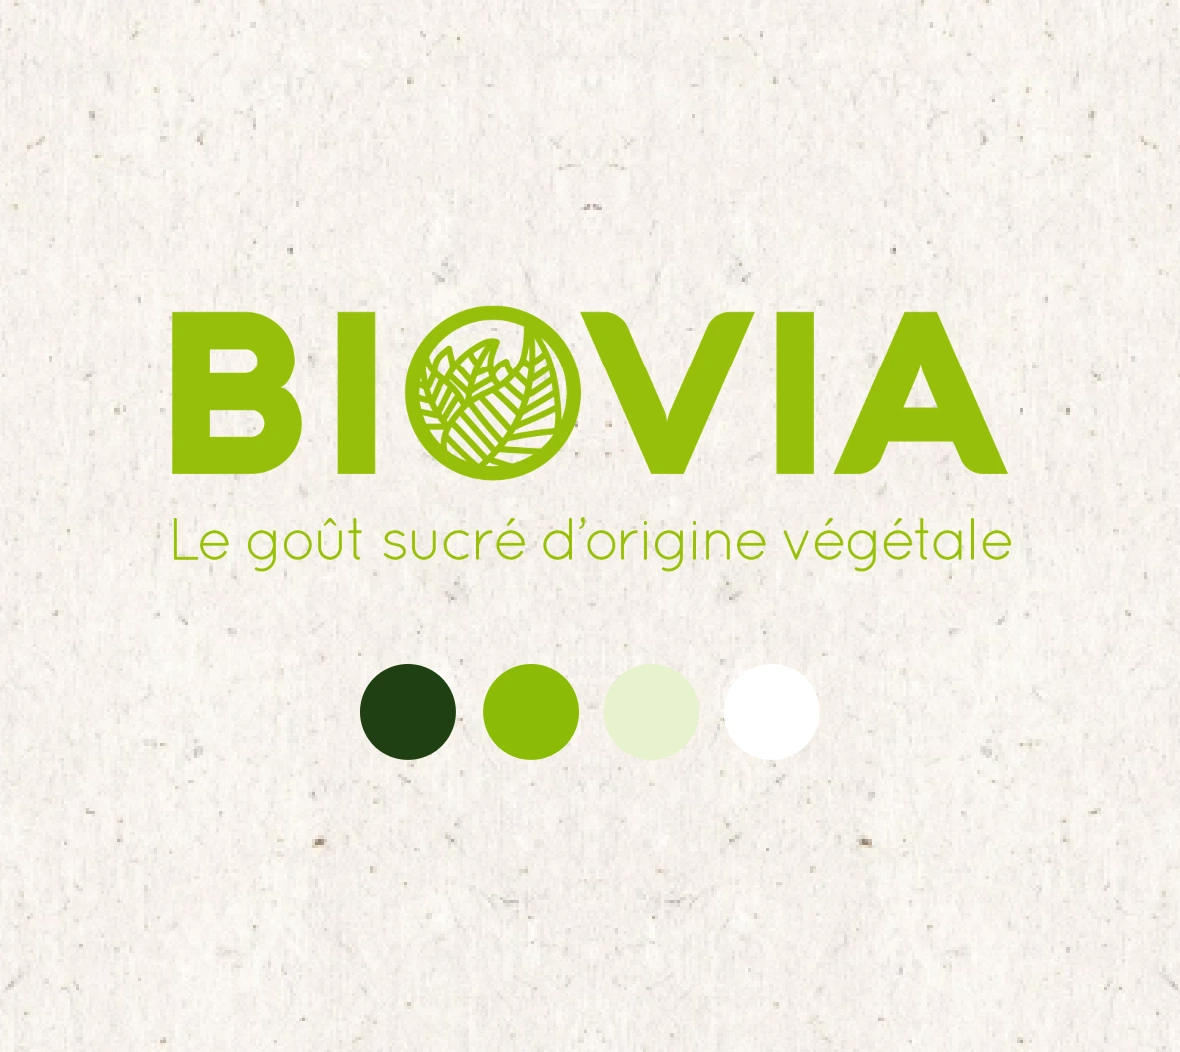 Biovia logo et charte graphique